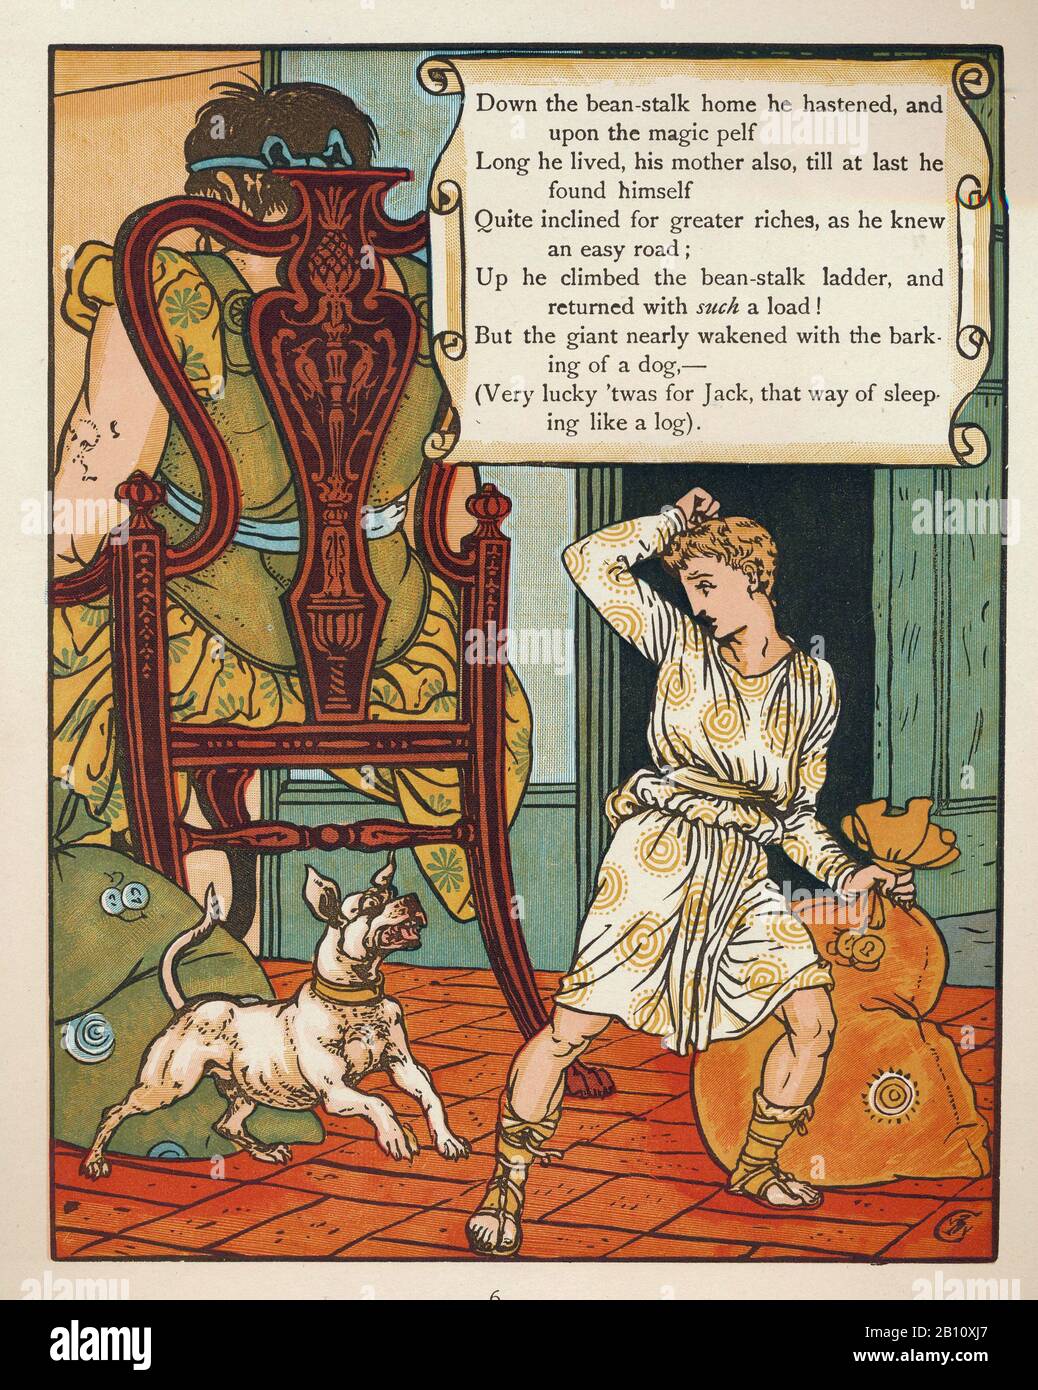 Gato y el tallo de frijol - Ilustración de Walter Cane (1845 - 1915) Foto de stock